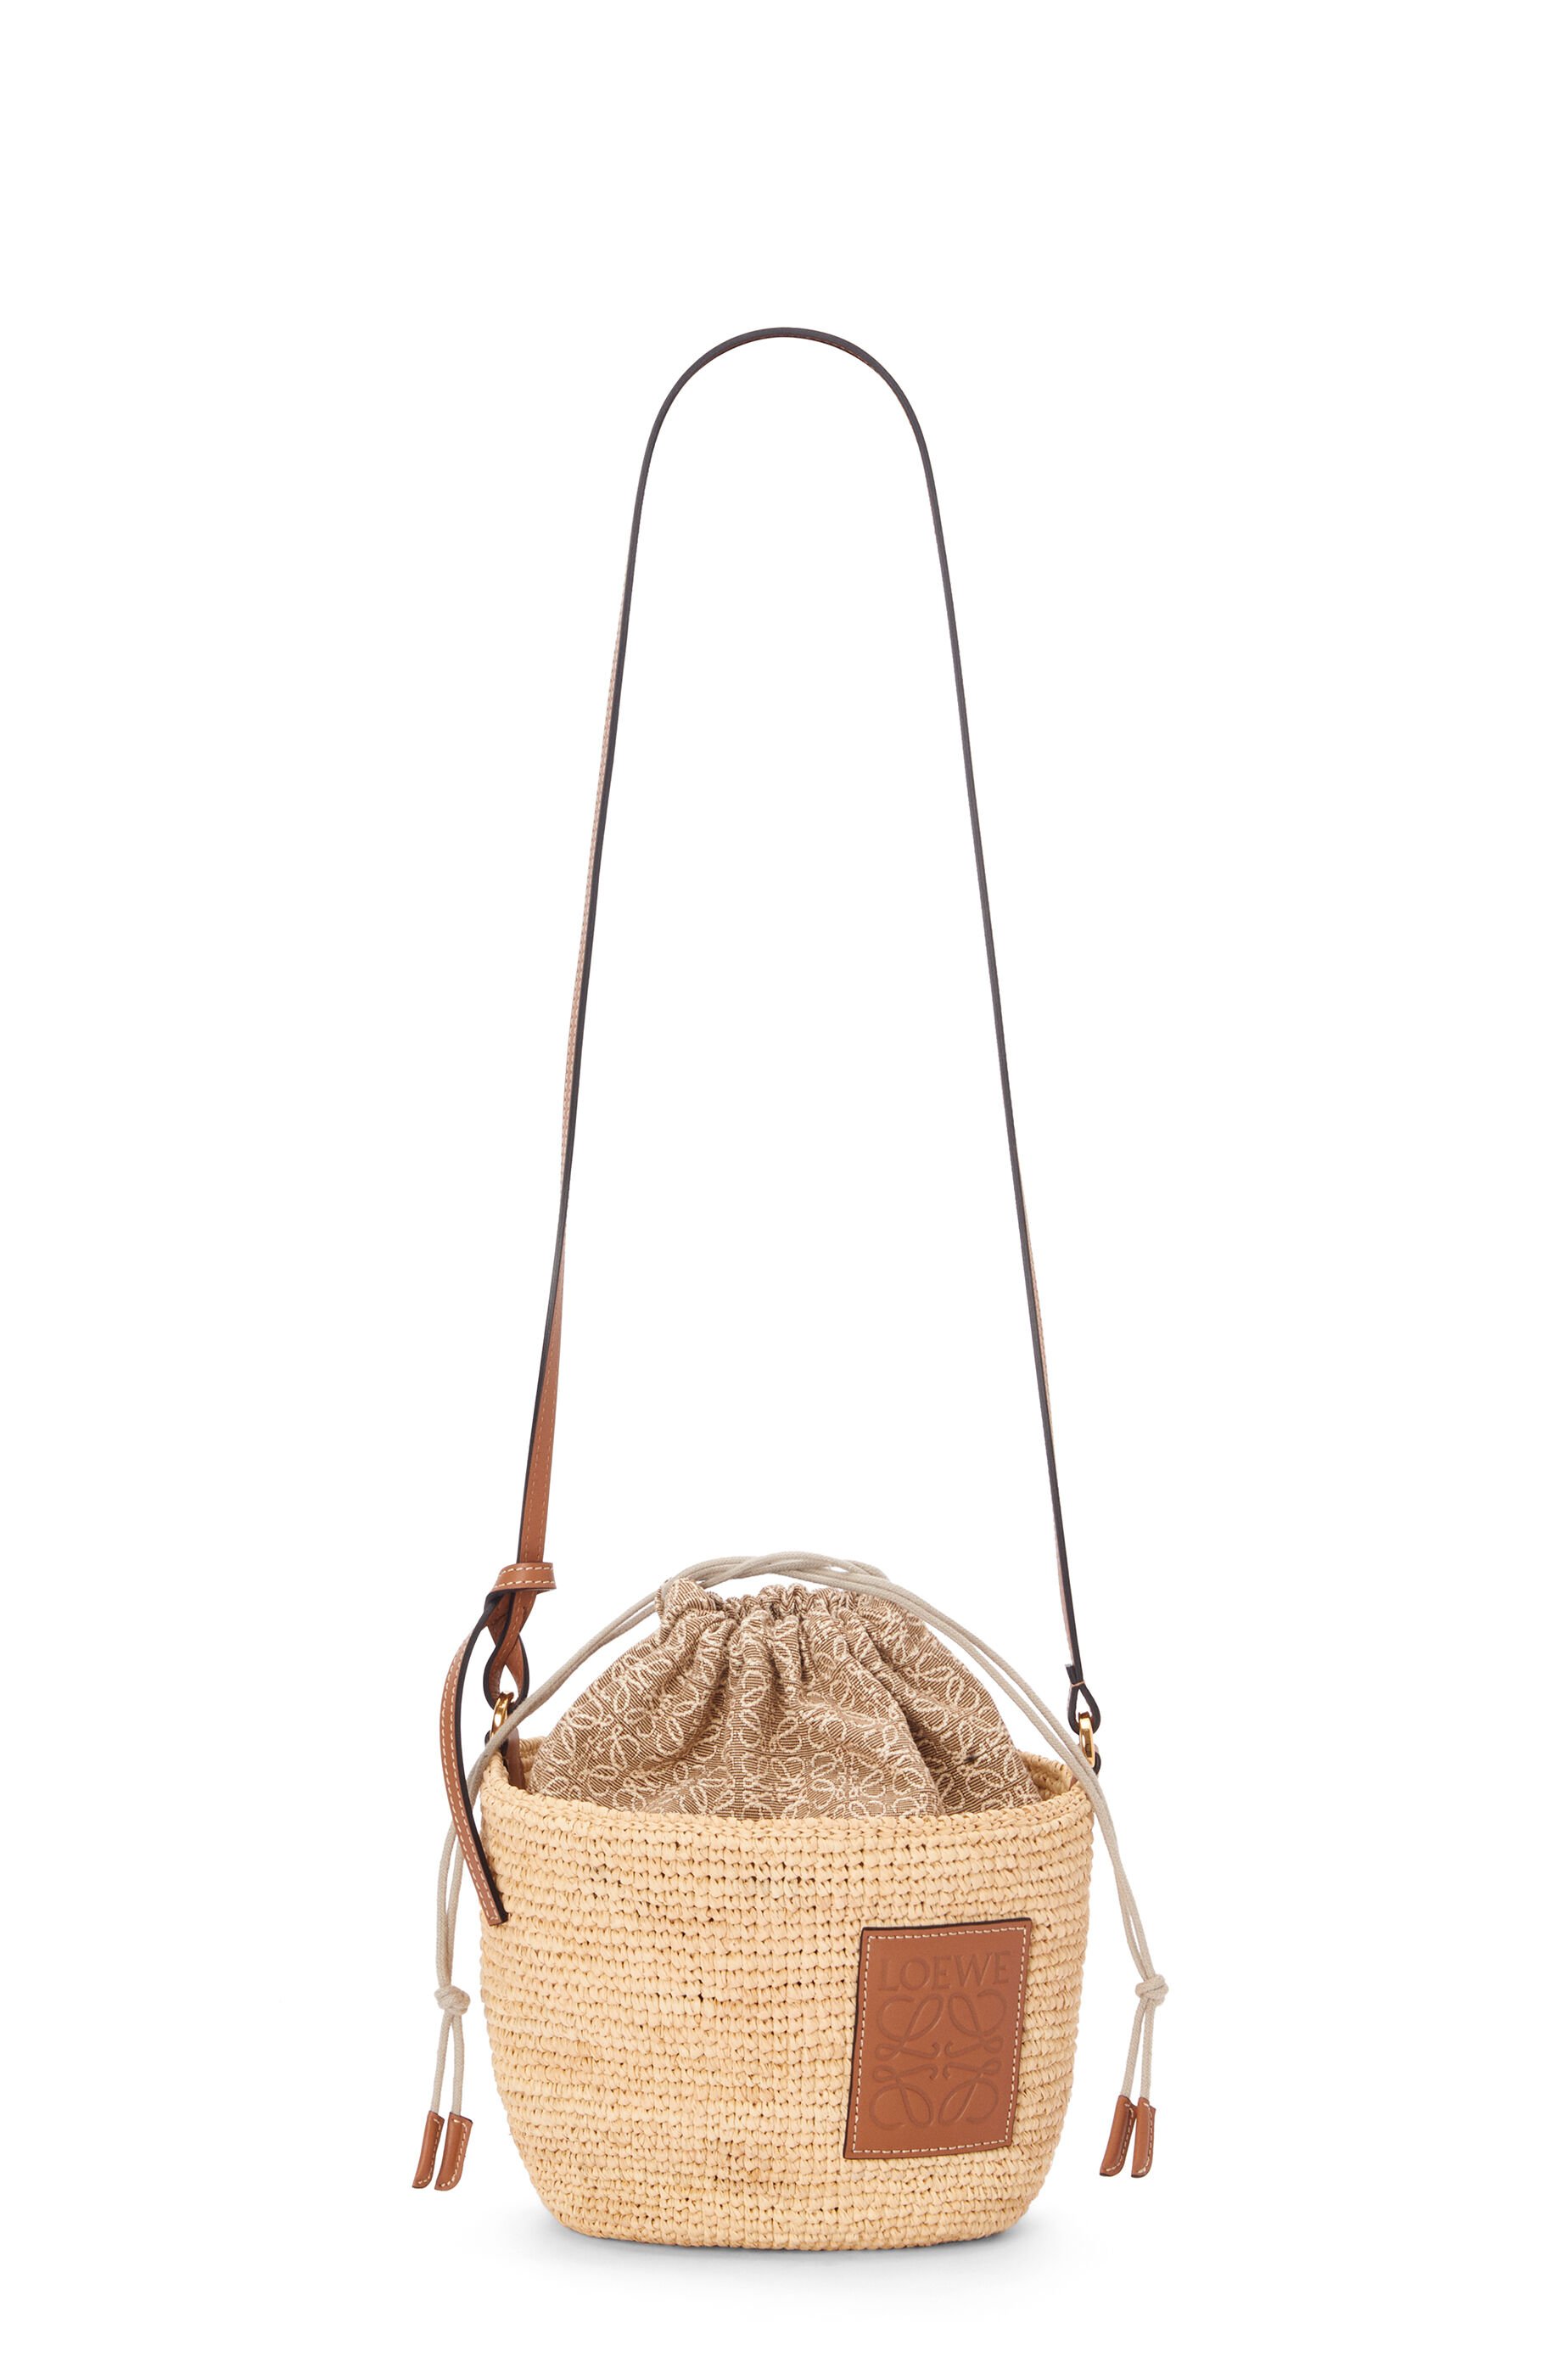 Loewe x Paula Ibiza Bags | our Basket Bag collection | Loewe